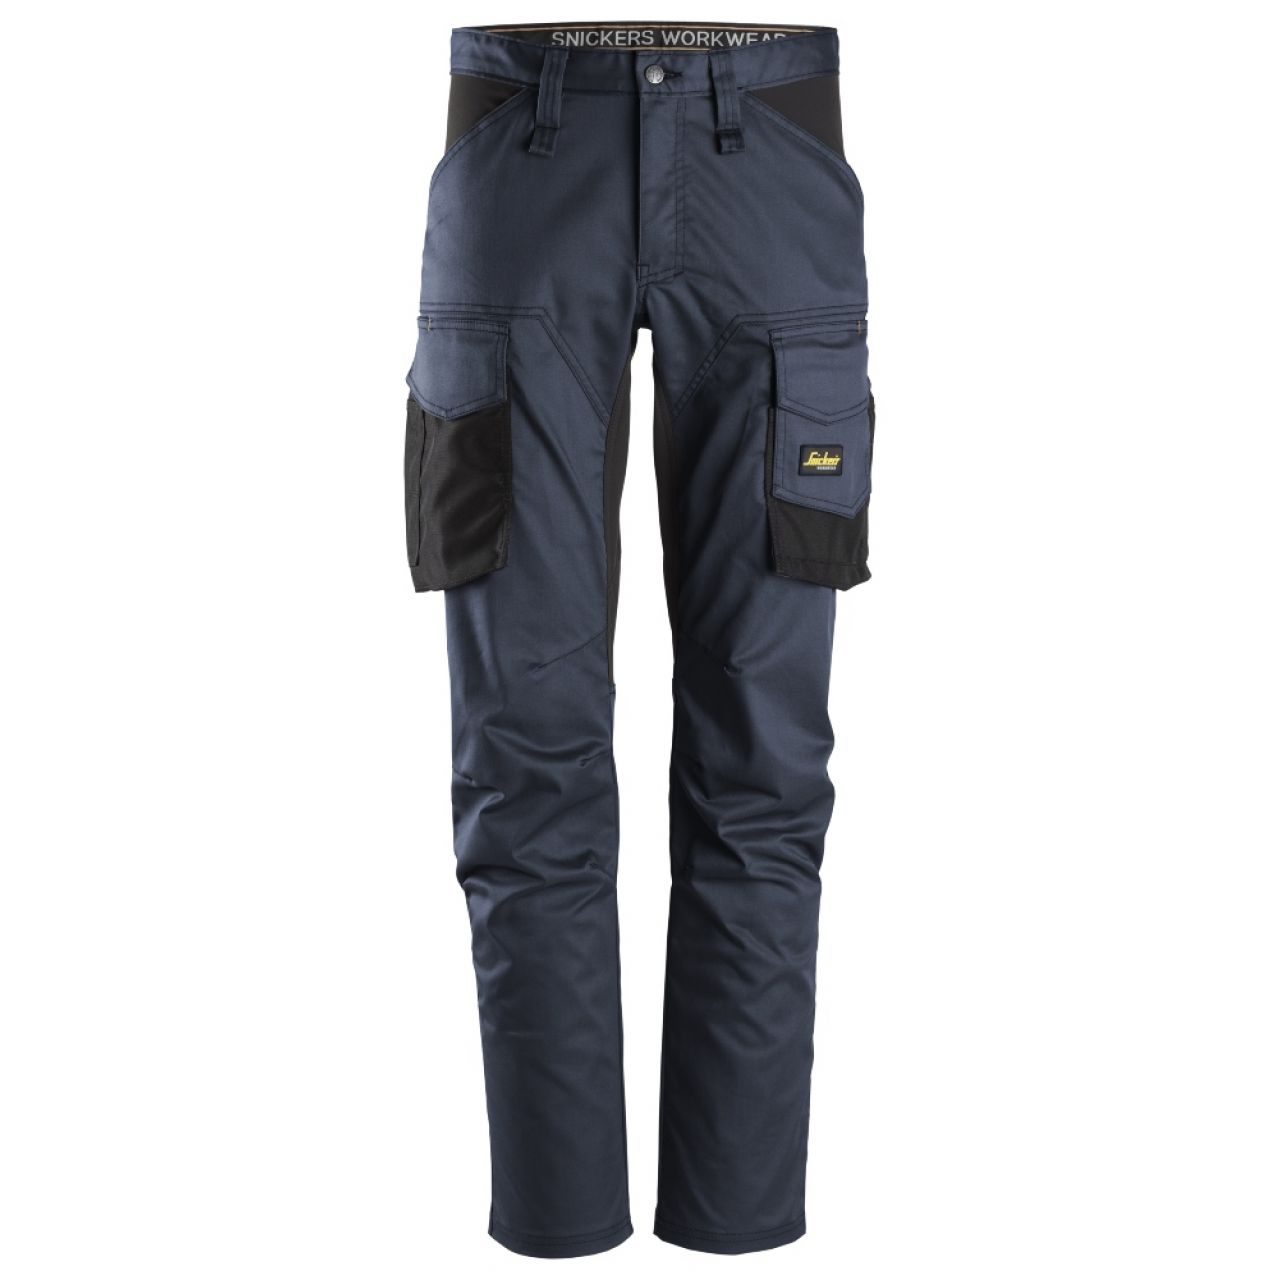 6803 Pantalones largos de trabajo elásticos sin bolsillos para las rodilleras AllroundWork azul marino-negro talla 54